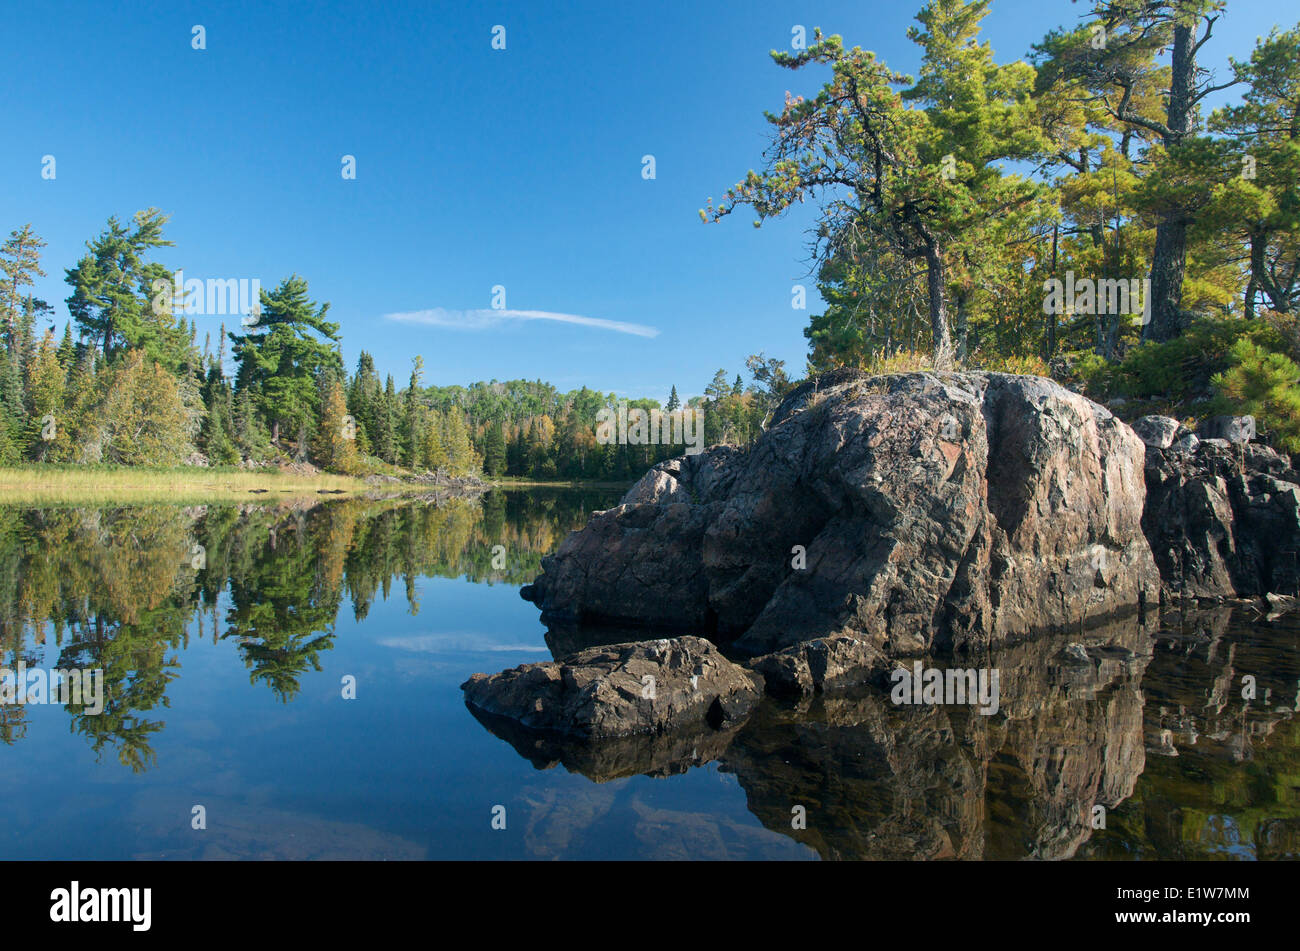 El lago, el bosque boreal y la isla de Canadian Shield rock en el Parque Provincial Quetico, Ontario, Canadá Foto de stock